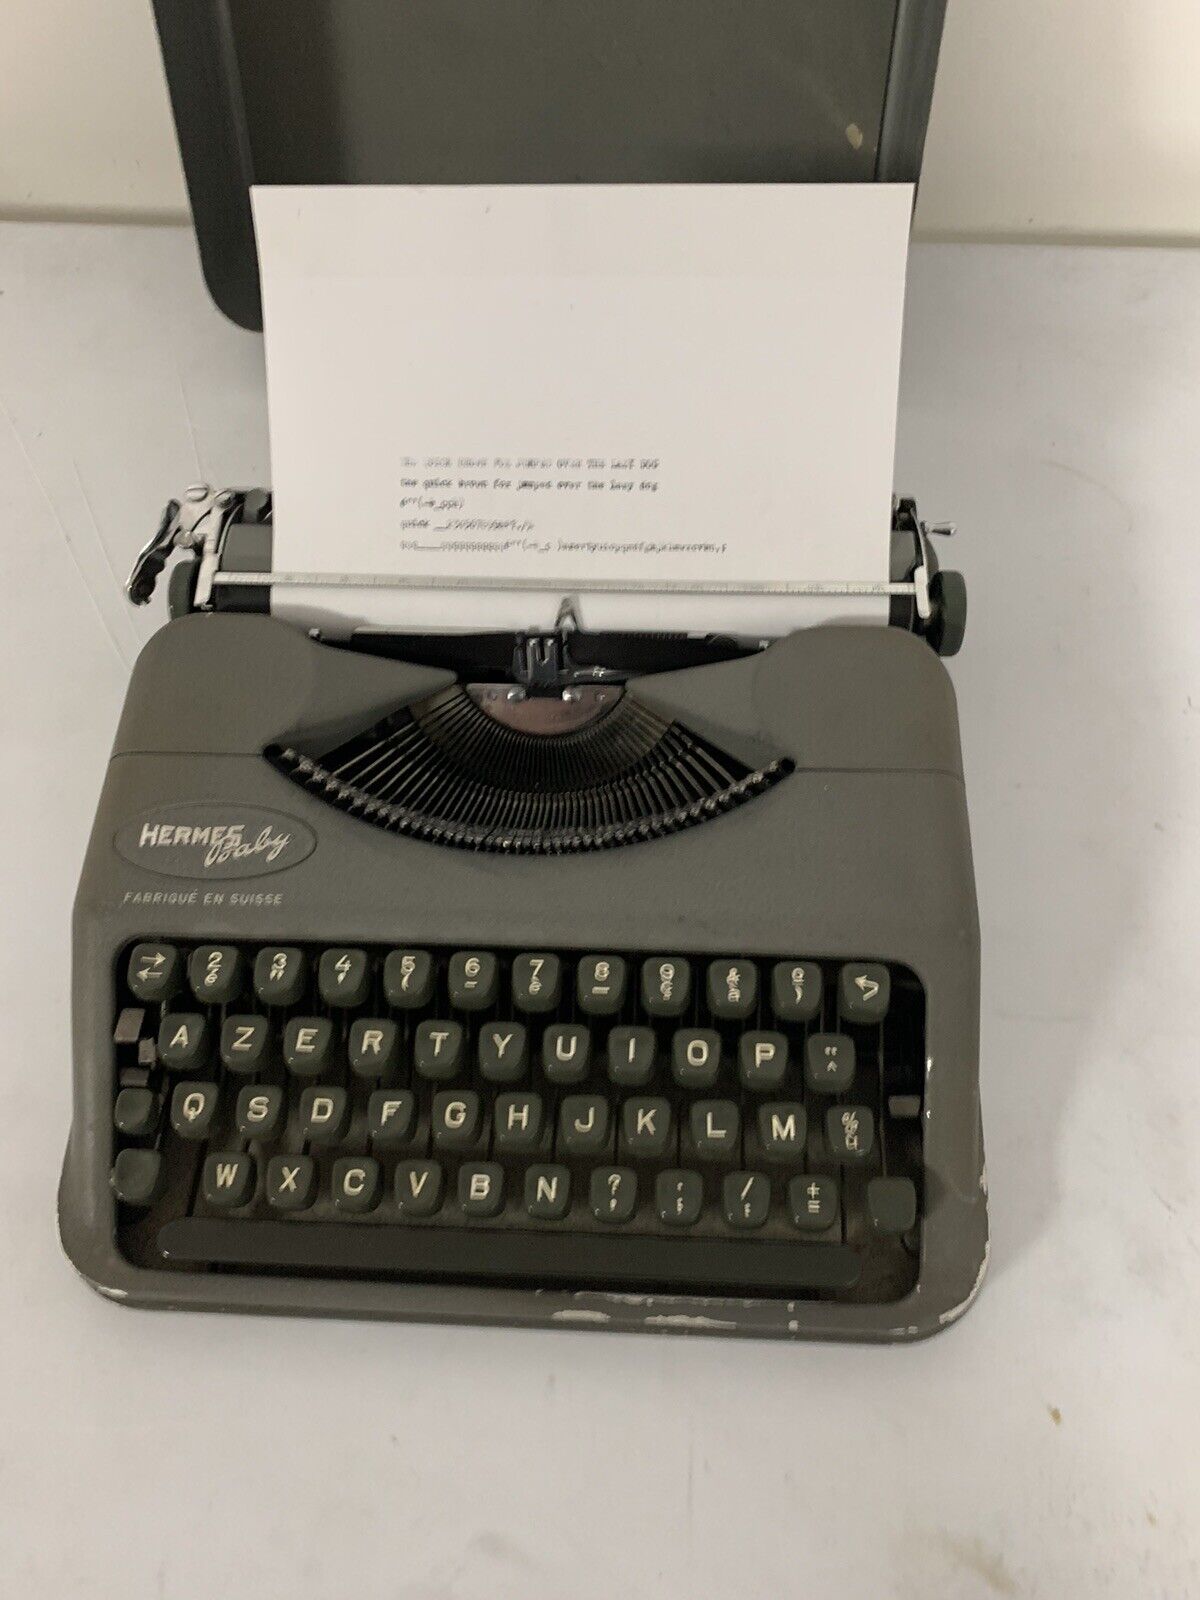 1955 Hermes Baby Portable Typewriter